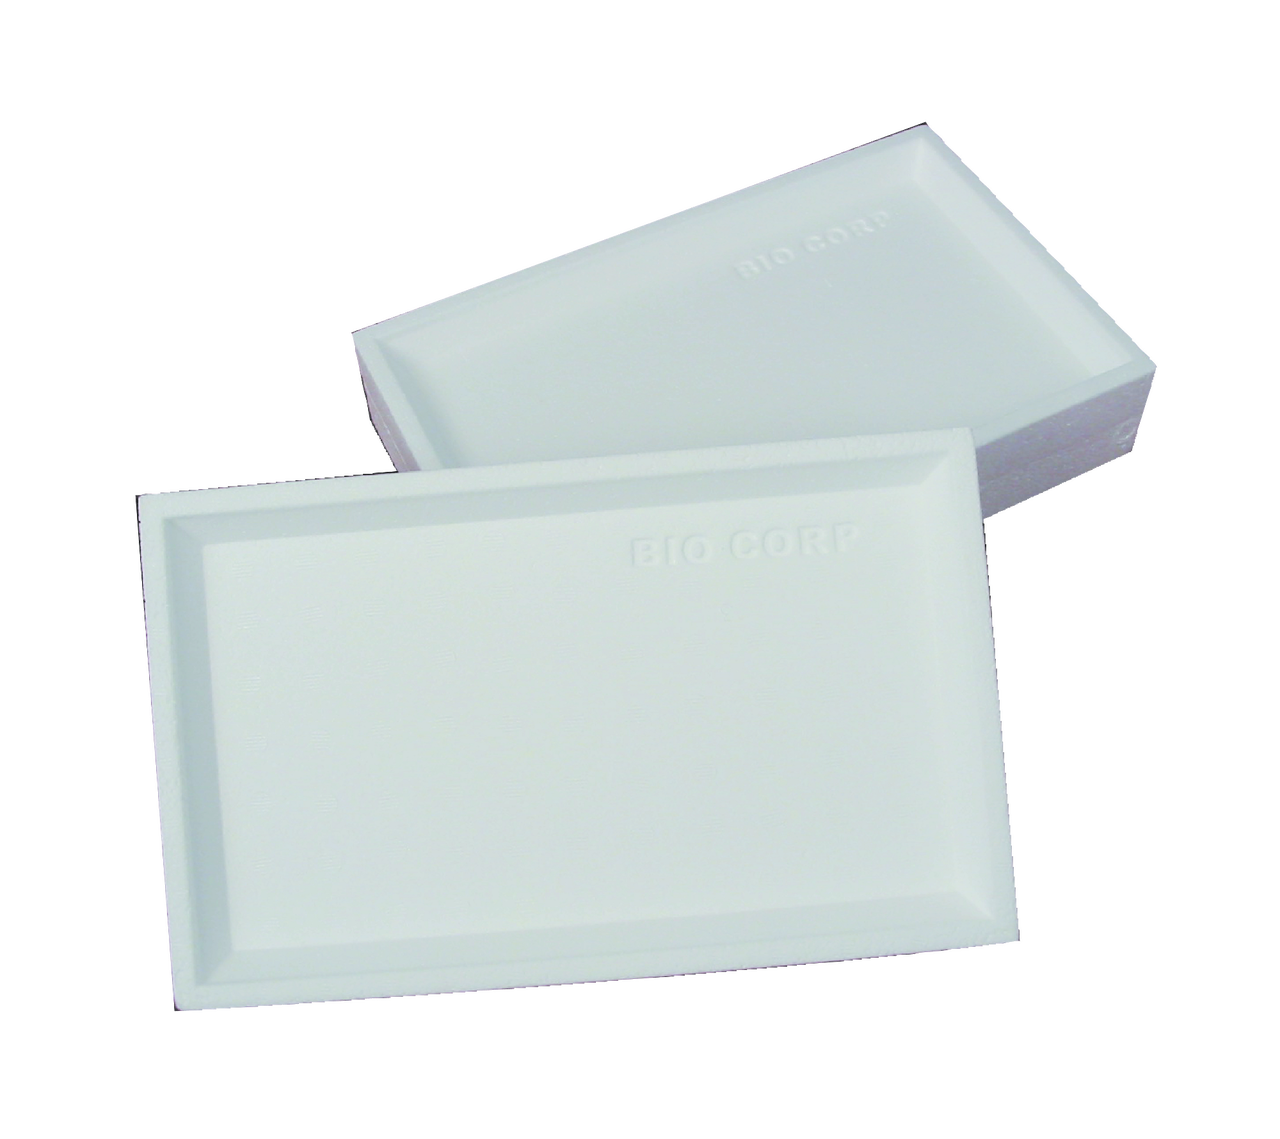 Styrofoam® Trays - Pack of 25 - STEM